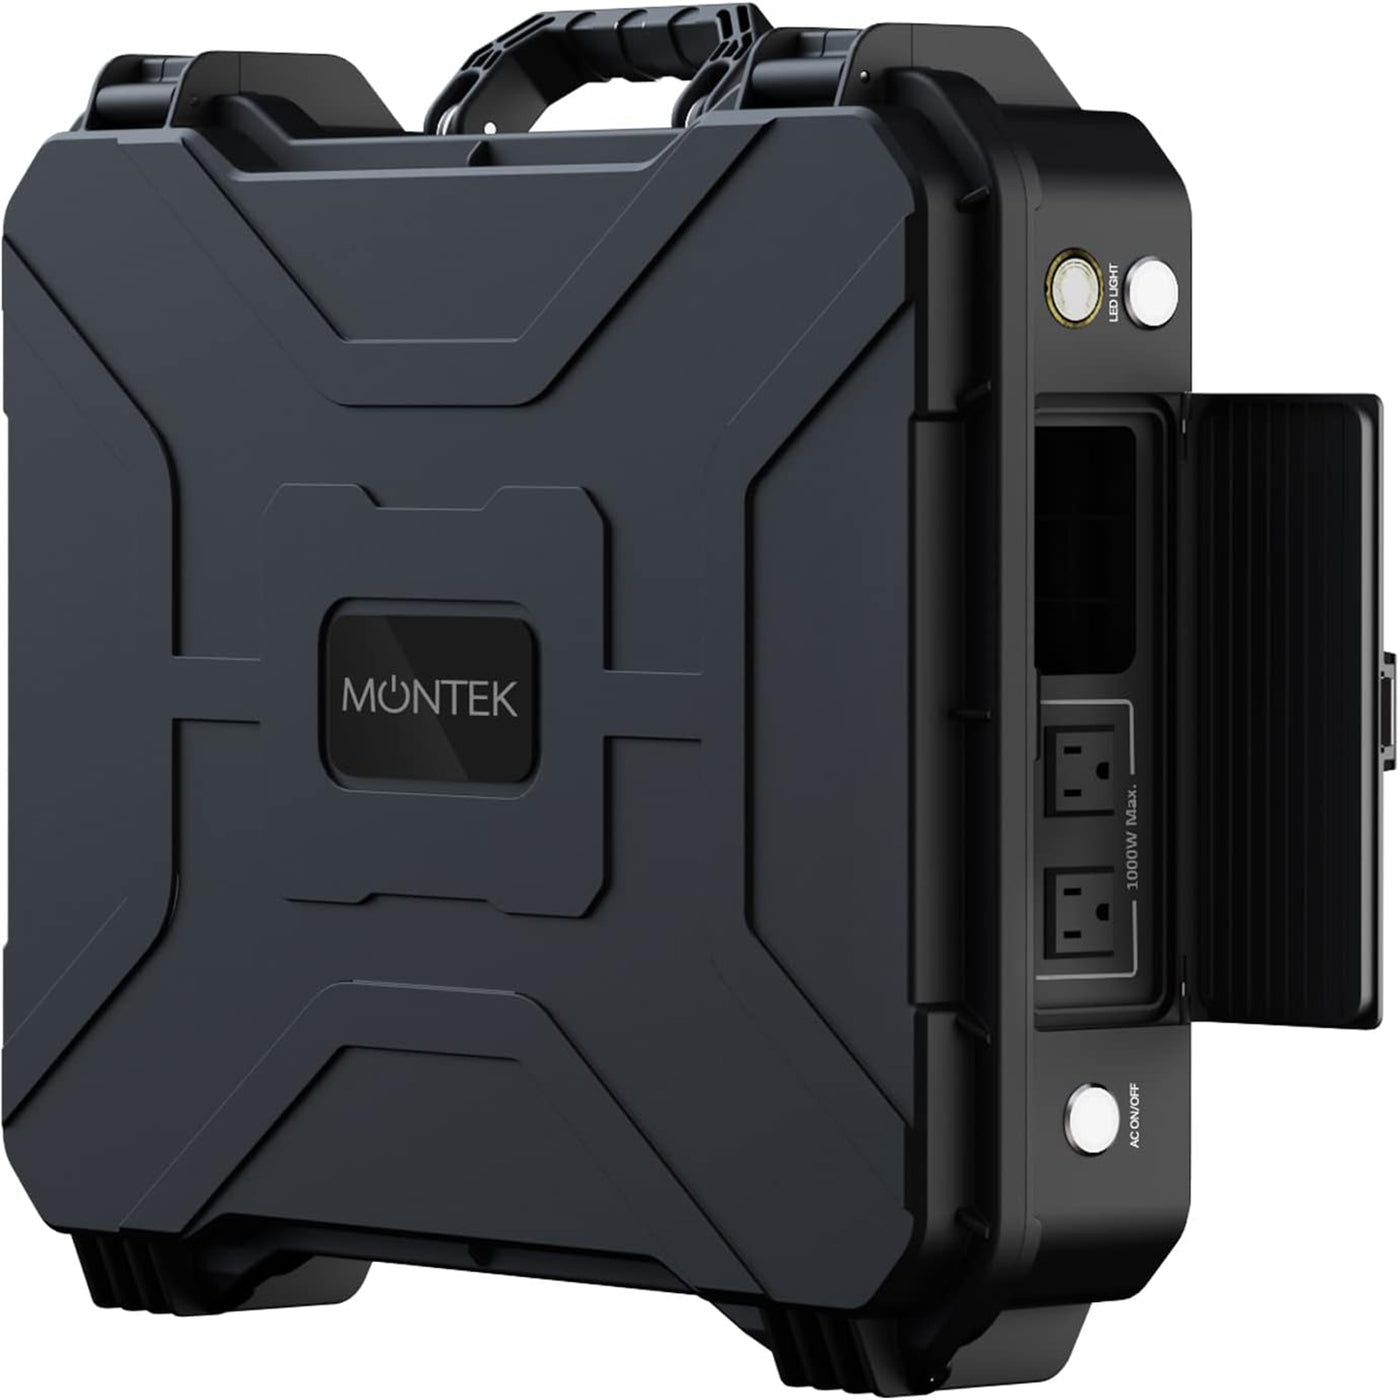 MONTEK X1000 Portable Power Station 1000W (Black)